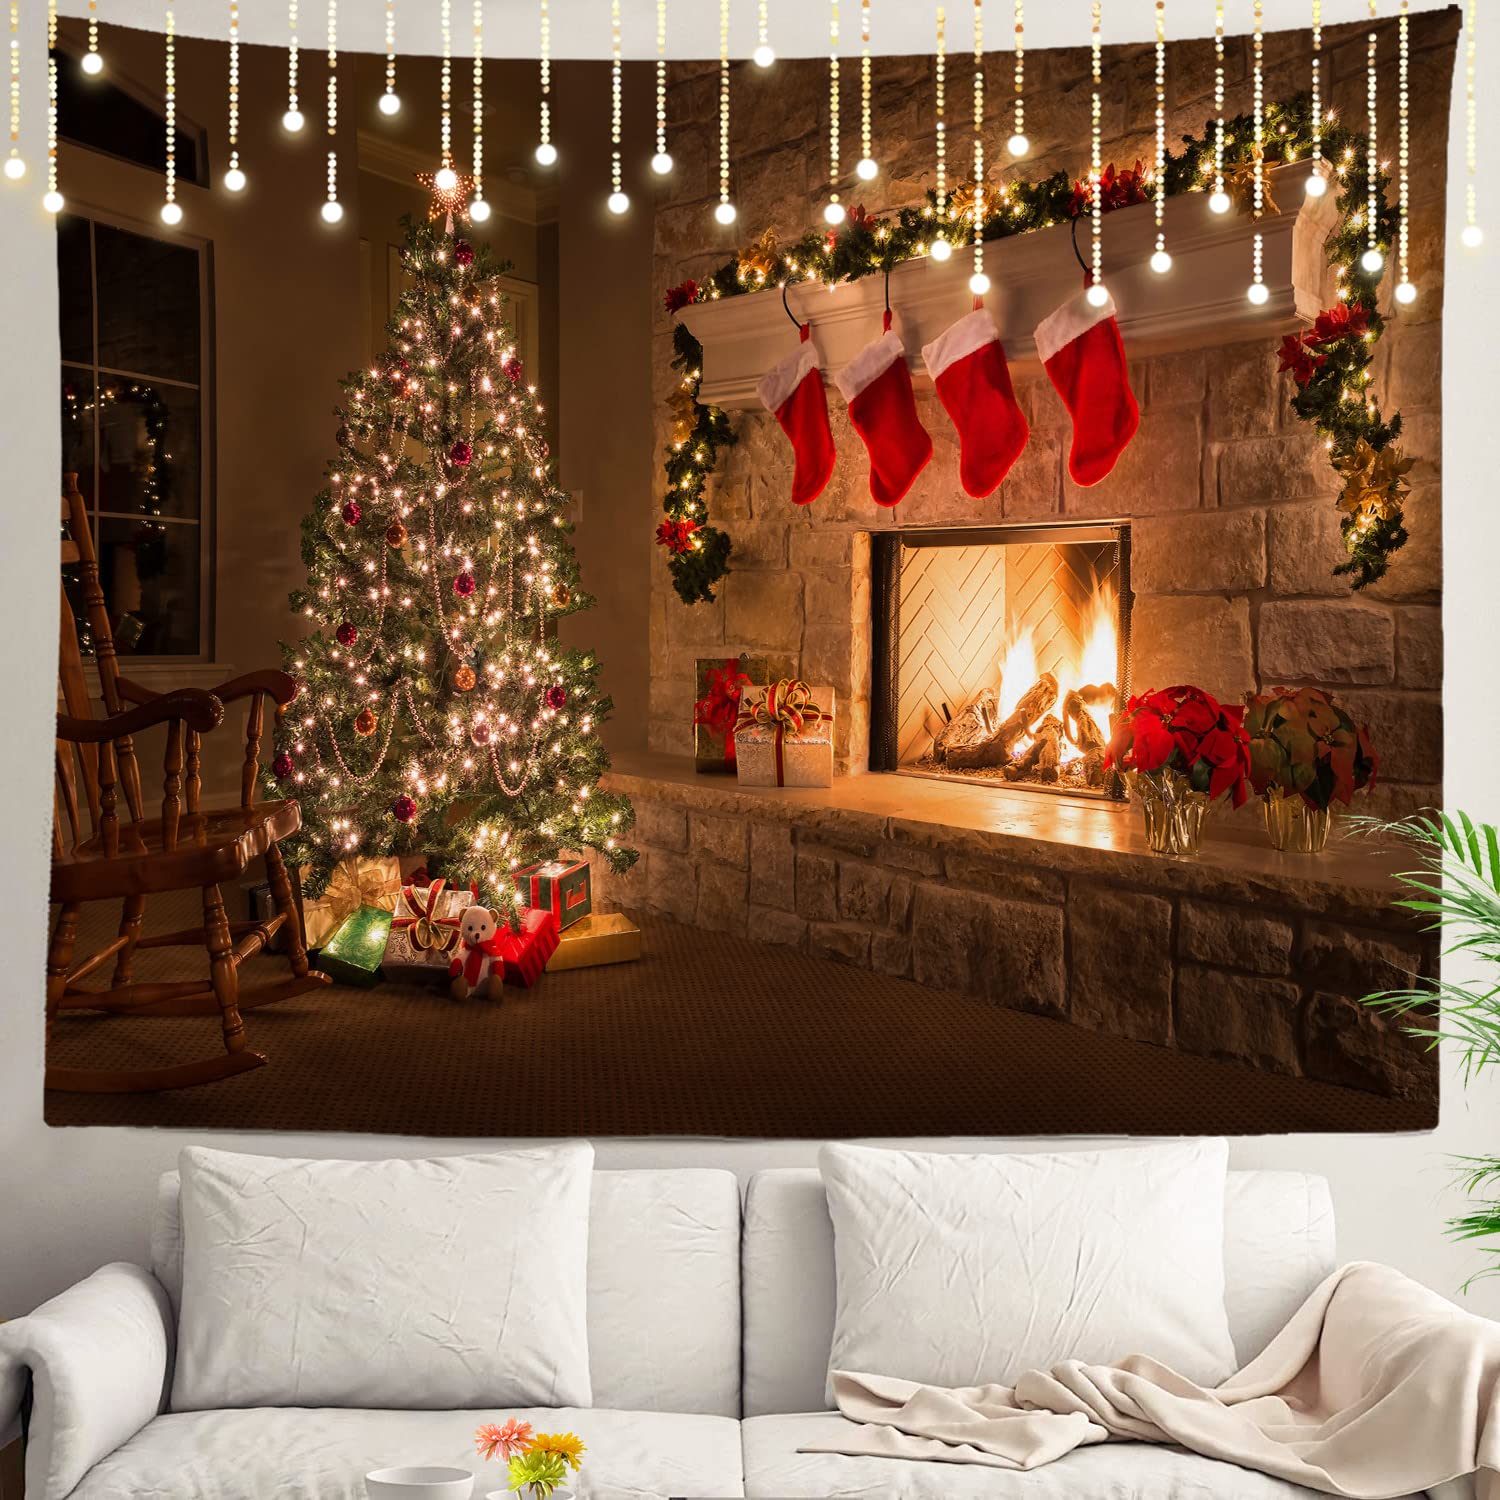 クリスマスツリーの壁タペストリー、光と贈り物で飾られた壁にぶら下がっている寮のリビングルームの寝室用の大きなタペストリーポリエステル